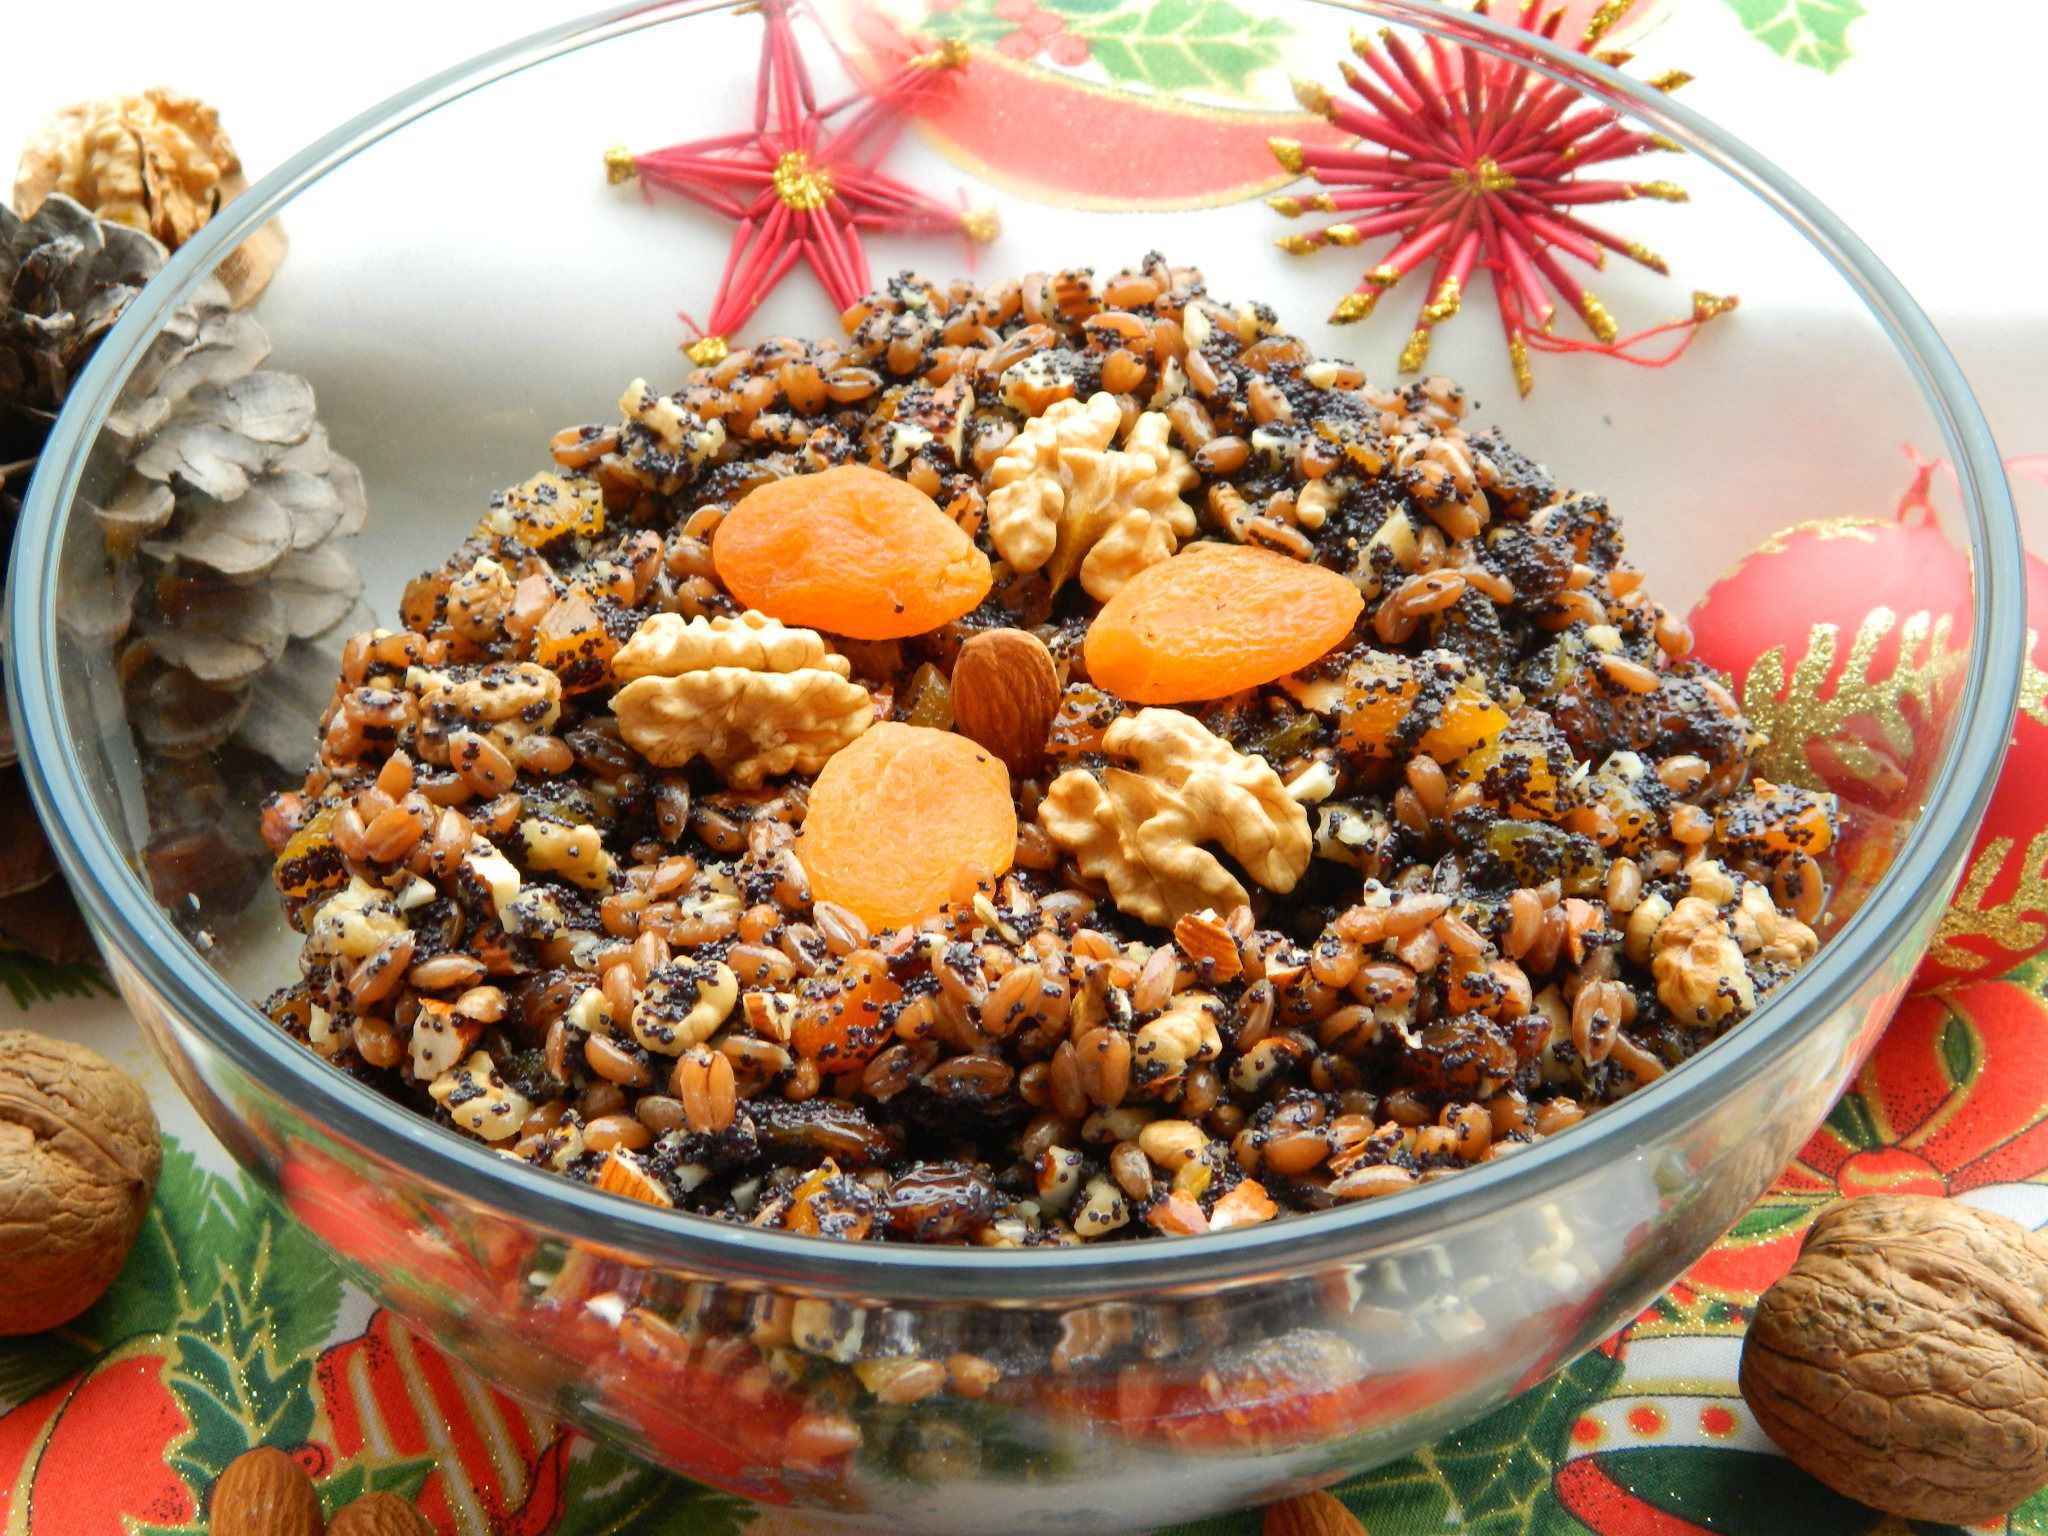 Святвечір-2019: Традиційні рецепти багатої куті. Головне традиційне блюдо на різдвяному столі - це кутя. Каша, яку готують з додаванням маку, горіхів, меду та інших смаколиків.